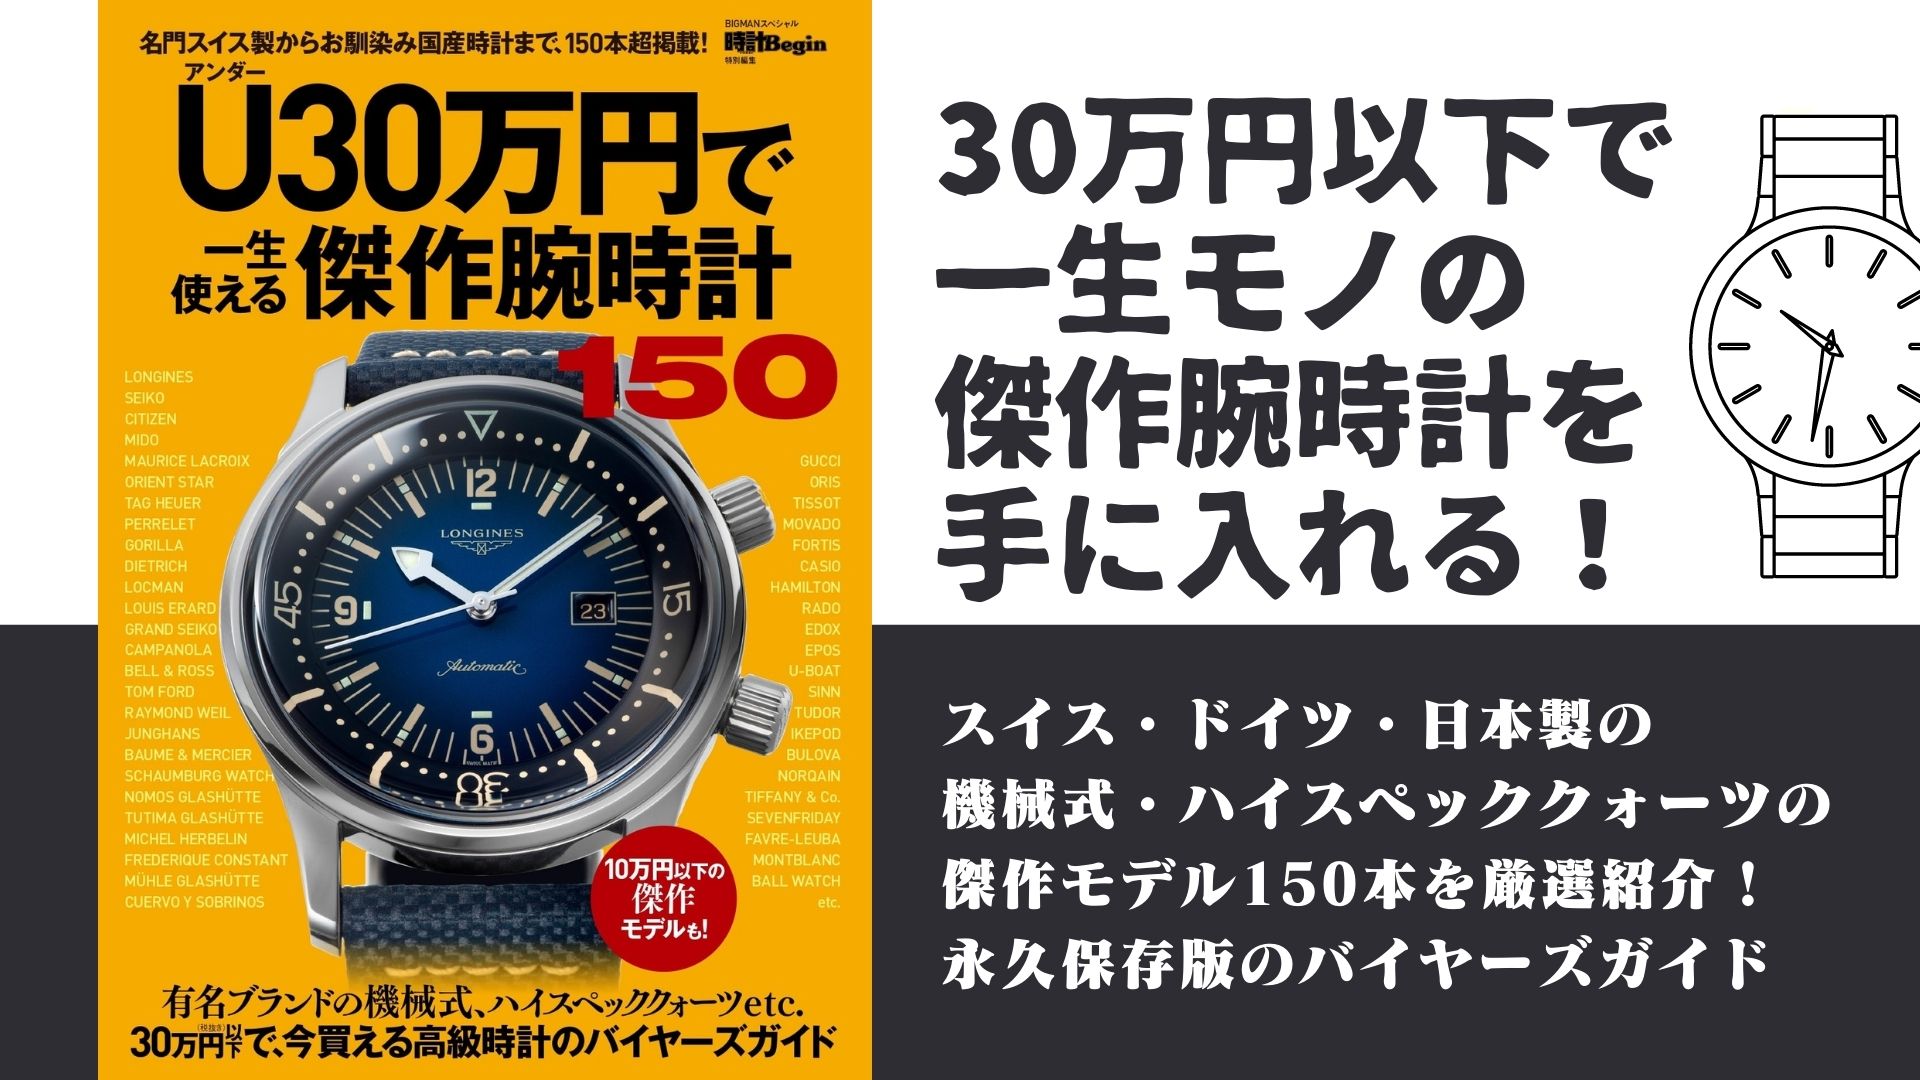 高級時計は30万円で手に入る ｕ アンダー 30万円で一生使える傑作腕時計150 発売 株式会社世界文化ホールディングスのプレスリリース